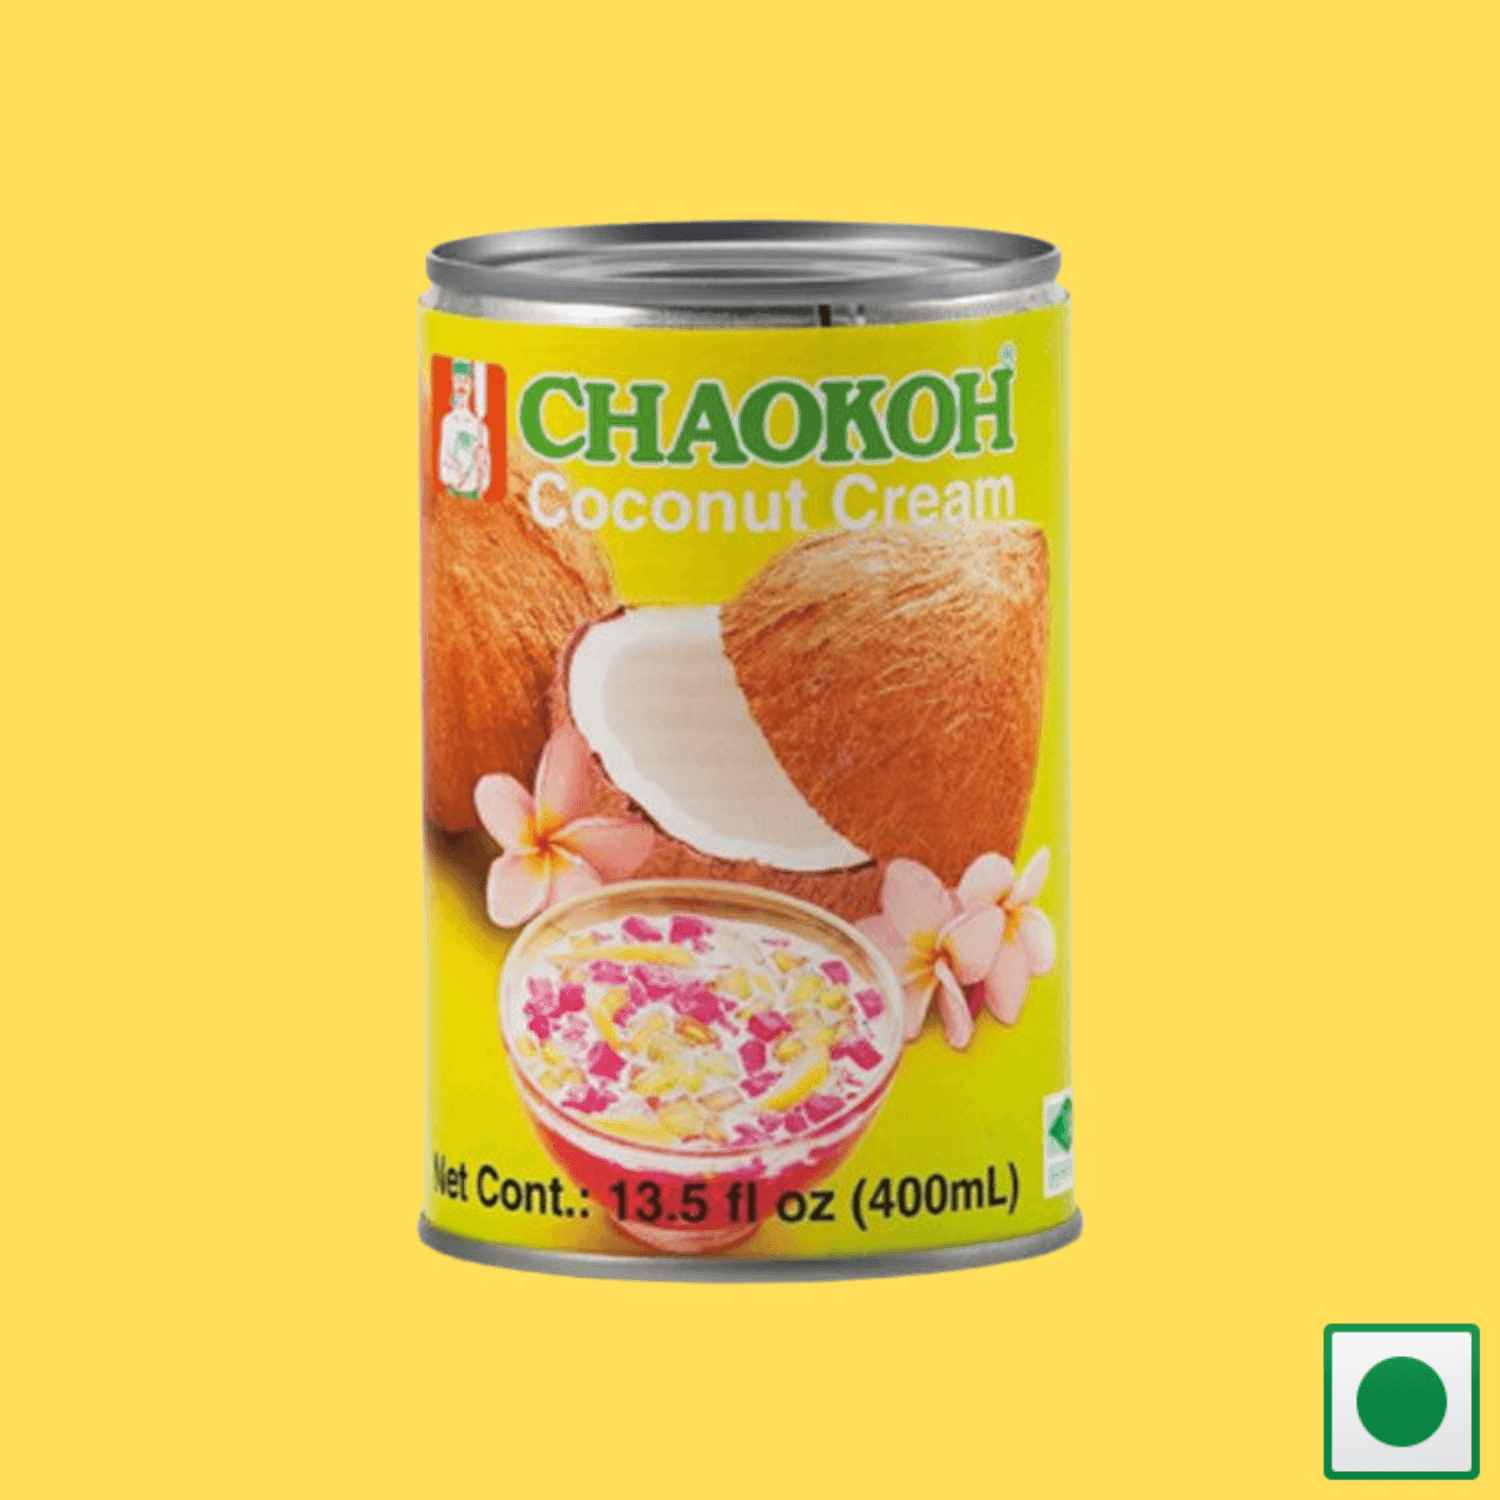 Chaokoh Coconut Cream 400ML (Imported) - Super 7 Mart